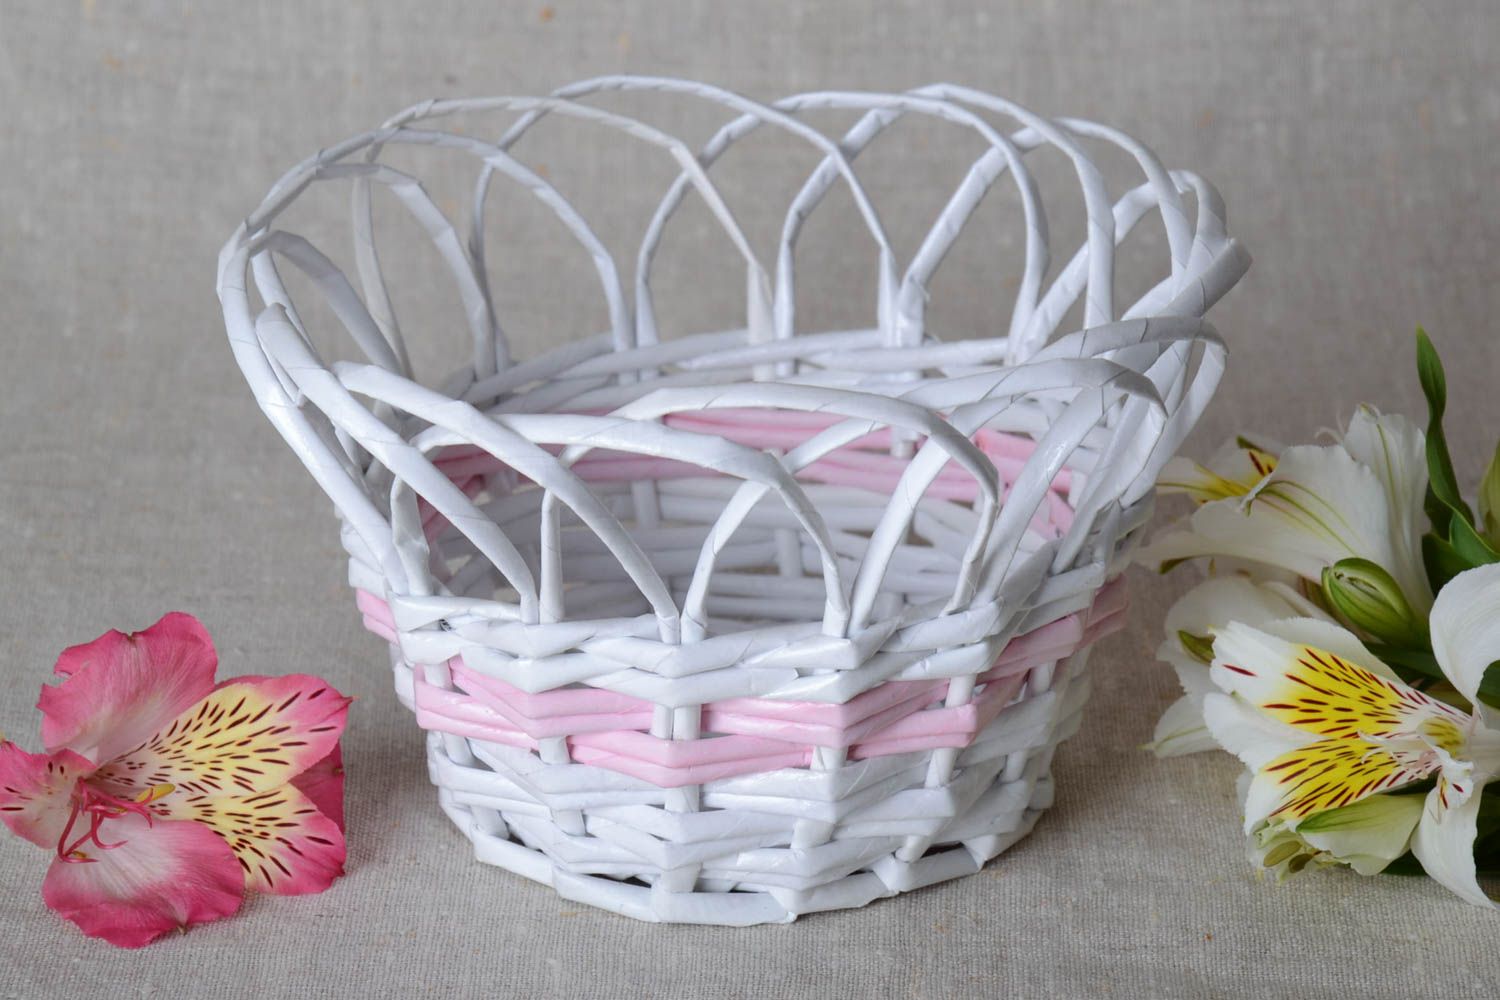 Плетеная вазочка для конфет из бумажной лозы белая ажурная красивая хэнд мейд фото 1